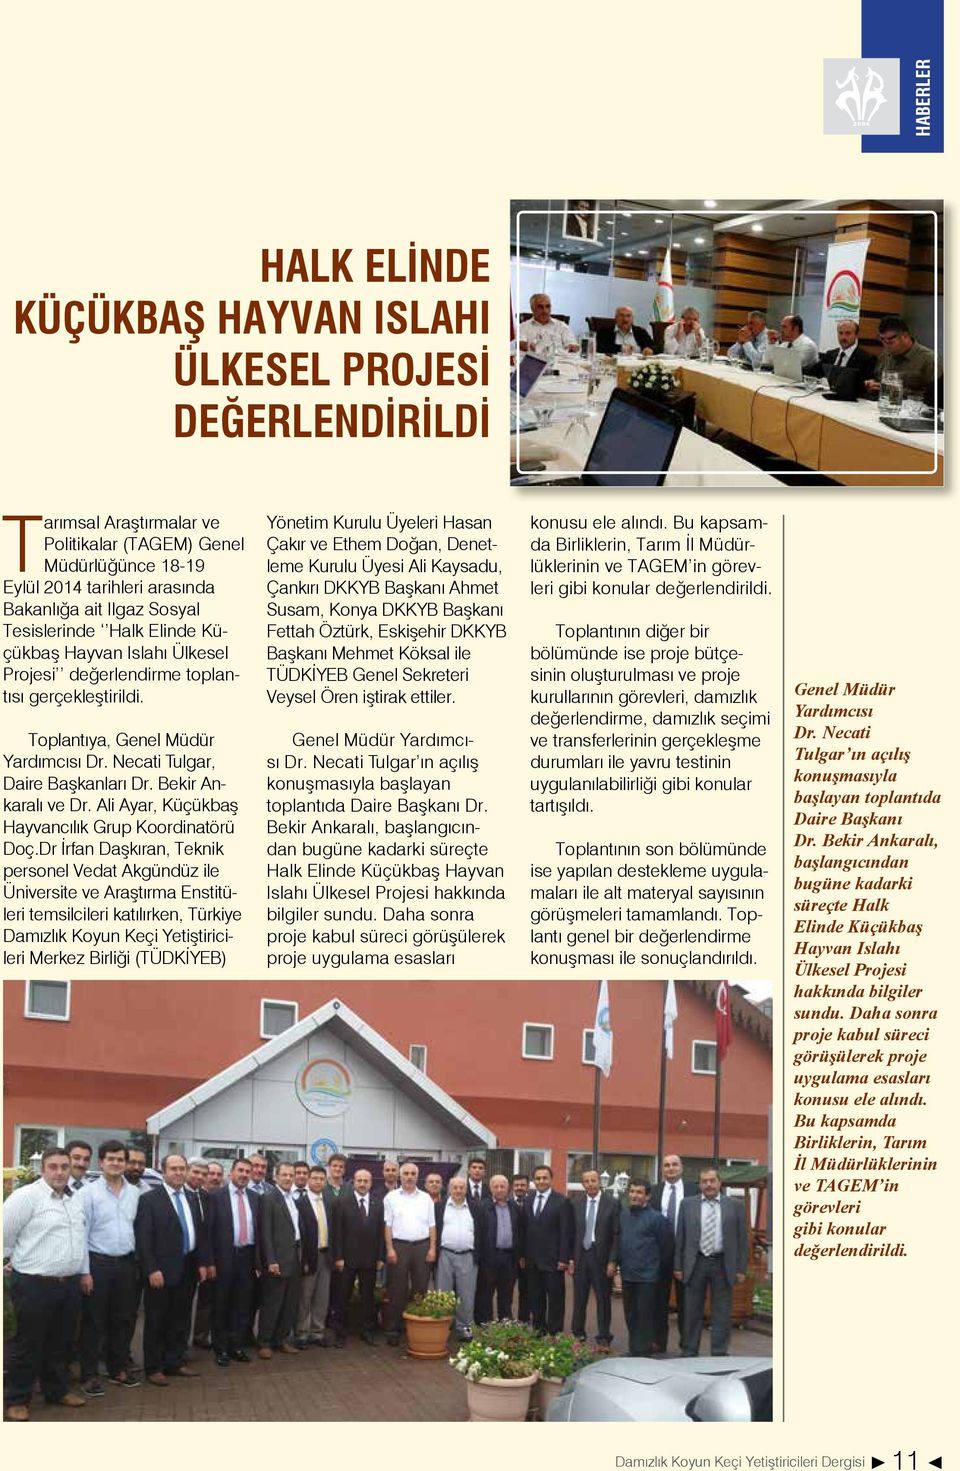 Bekir Ankaralı ve Dr. Ali Ayar, Küçükbaş Hayvancılık Grup Koordinatörü Doç.